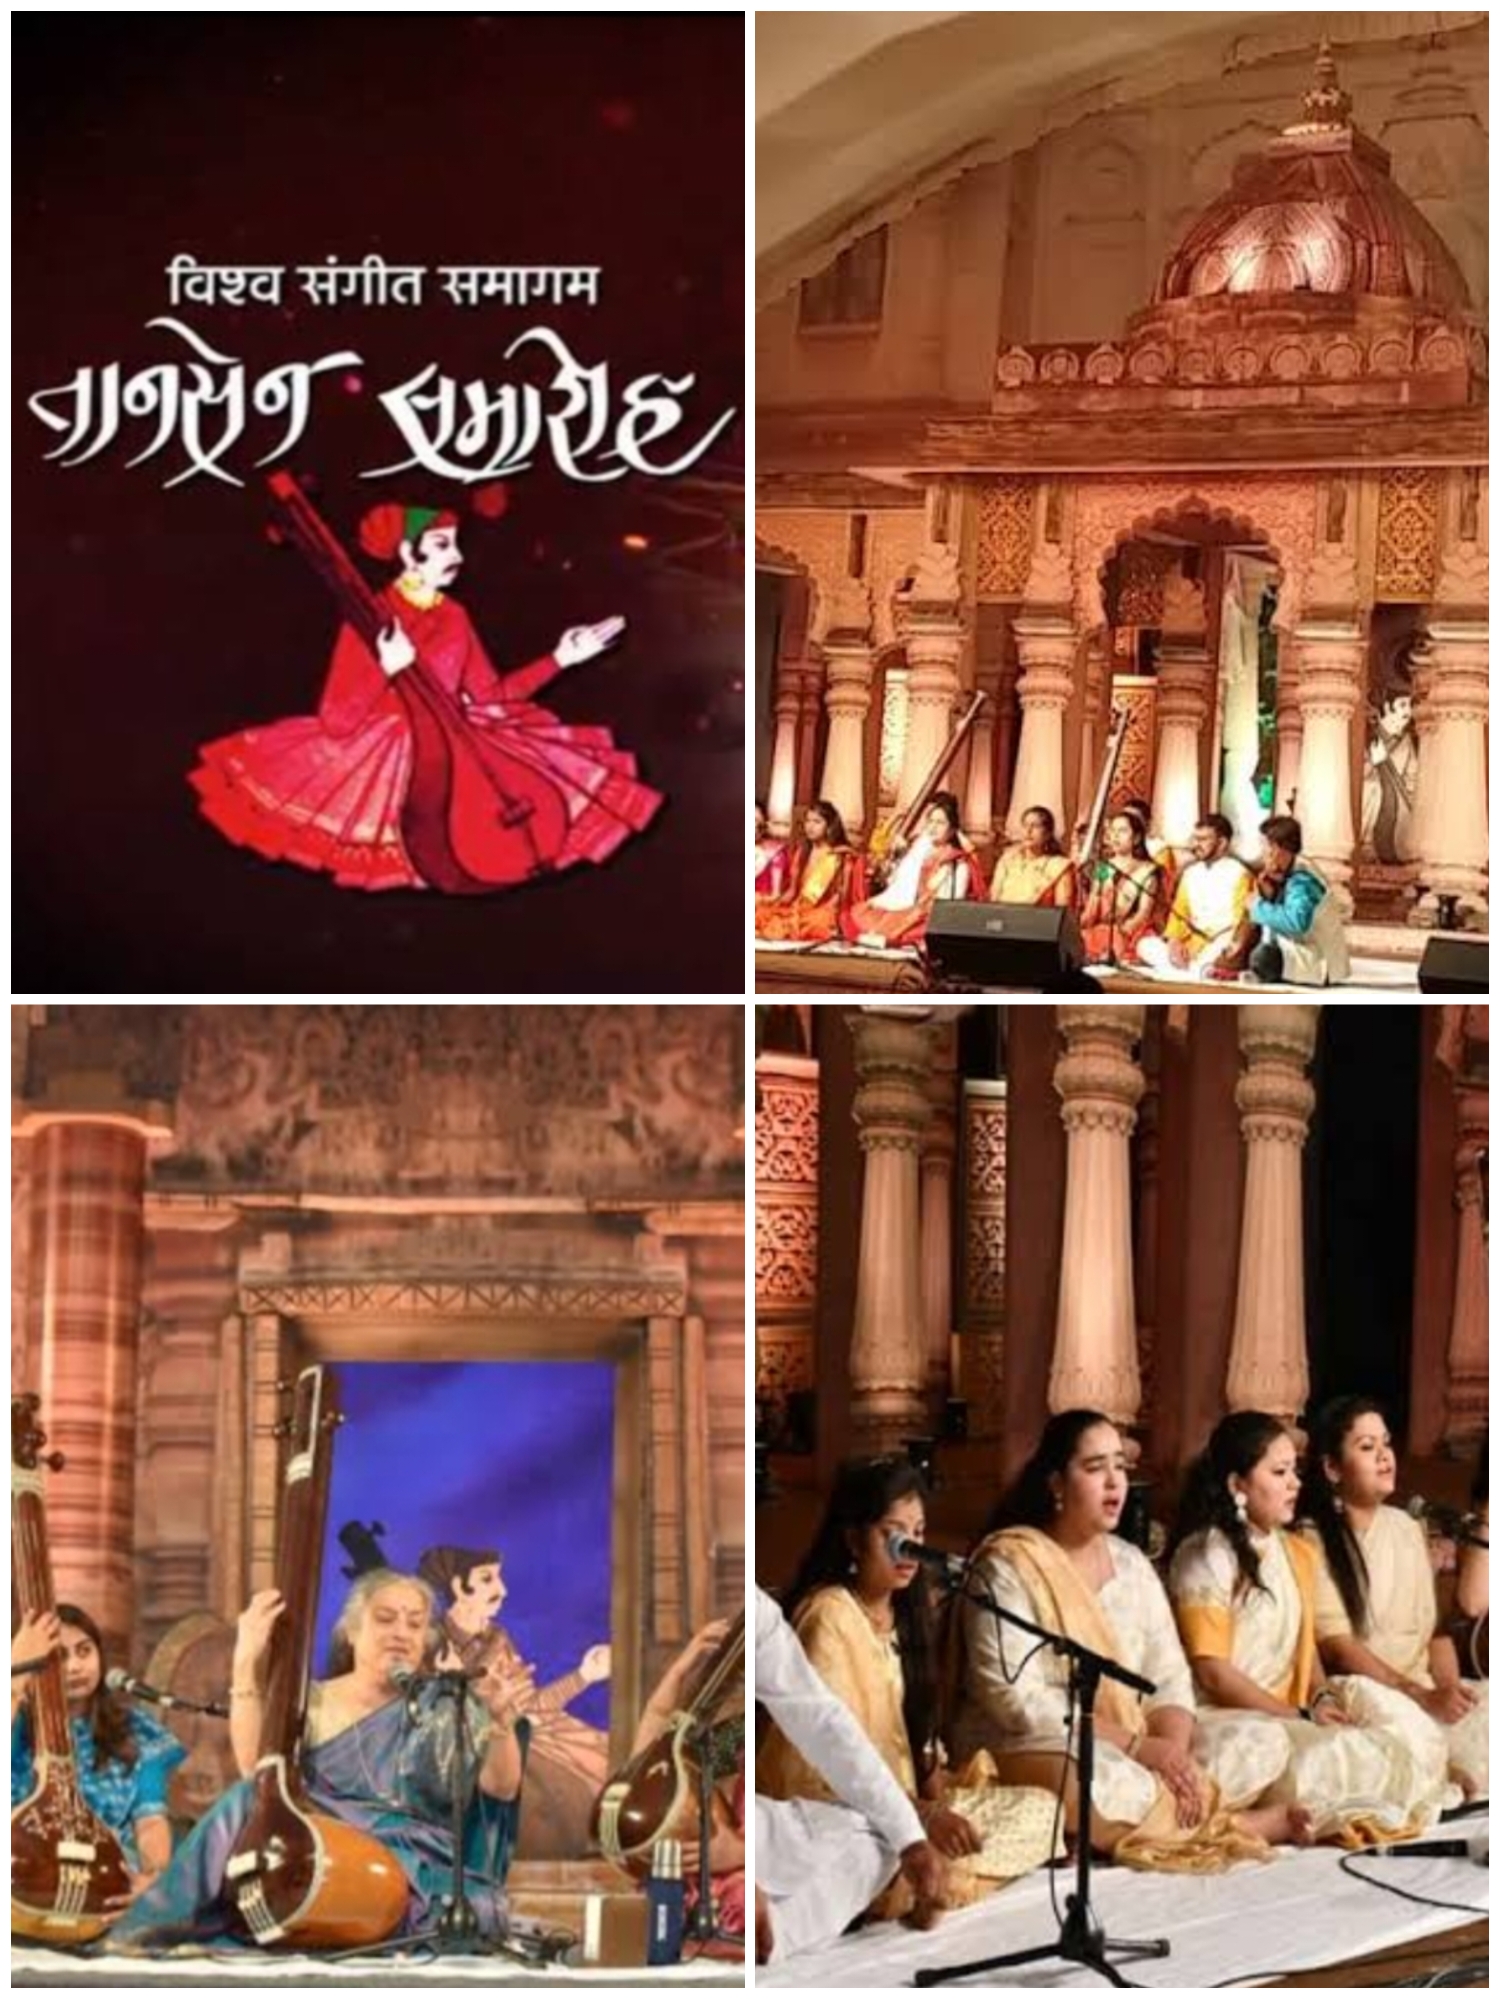 भारतीय संगीत के क्षेत्र में प्रतिष्ठित तानसेन संगीत समारोह